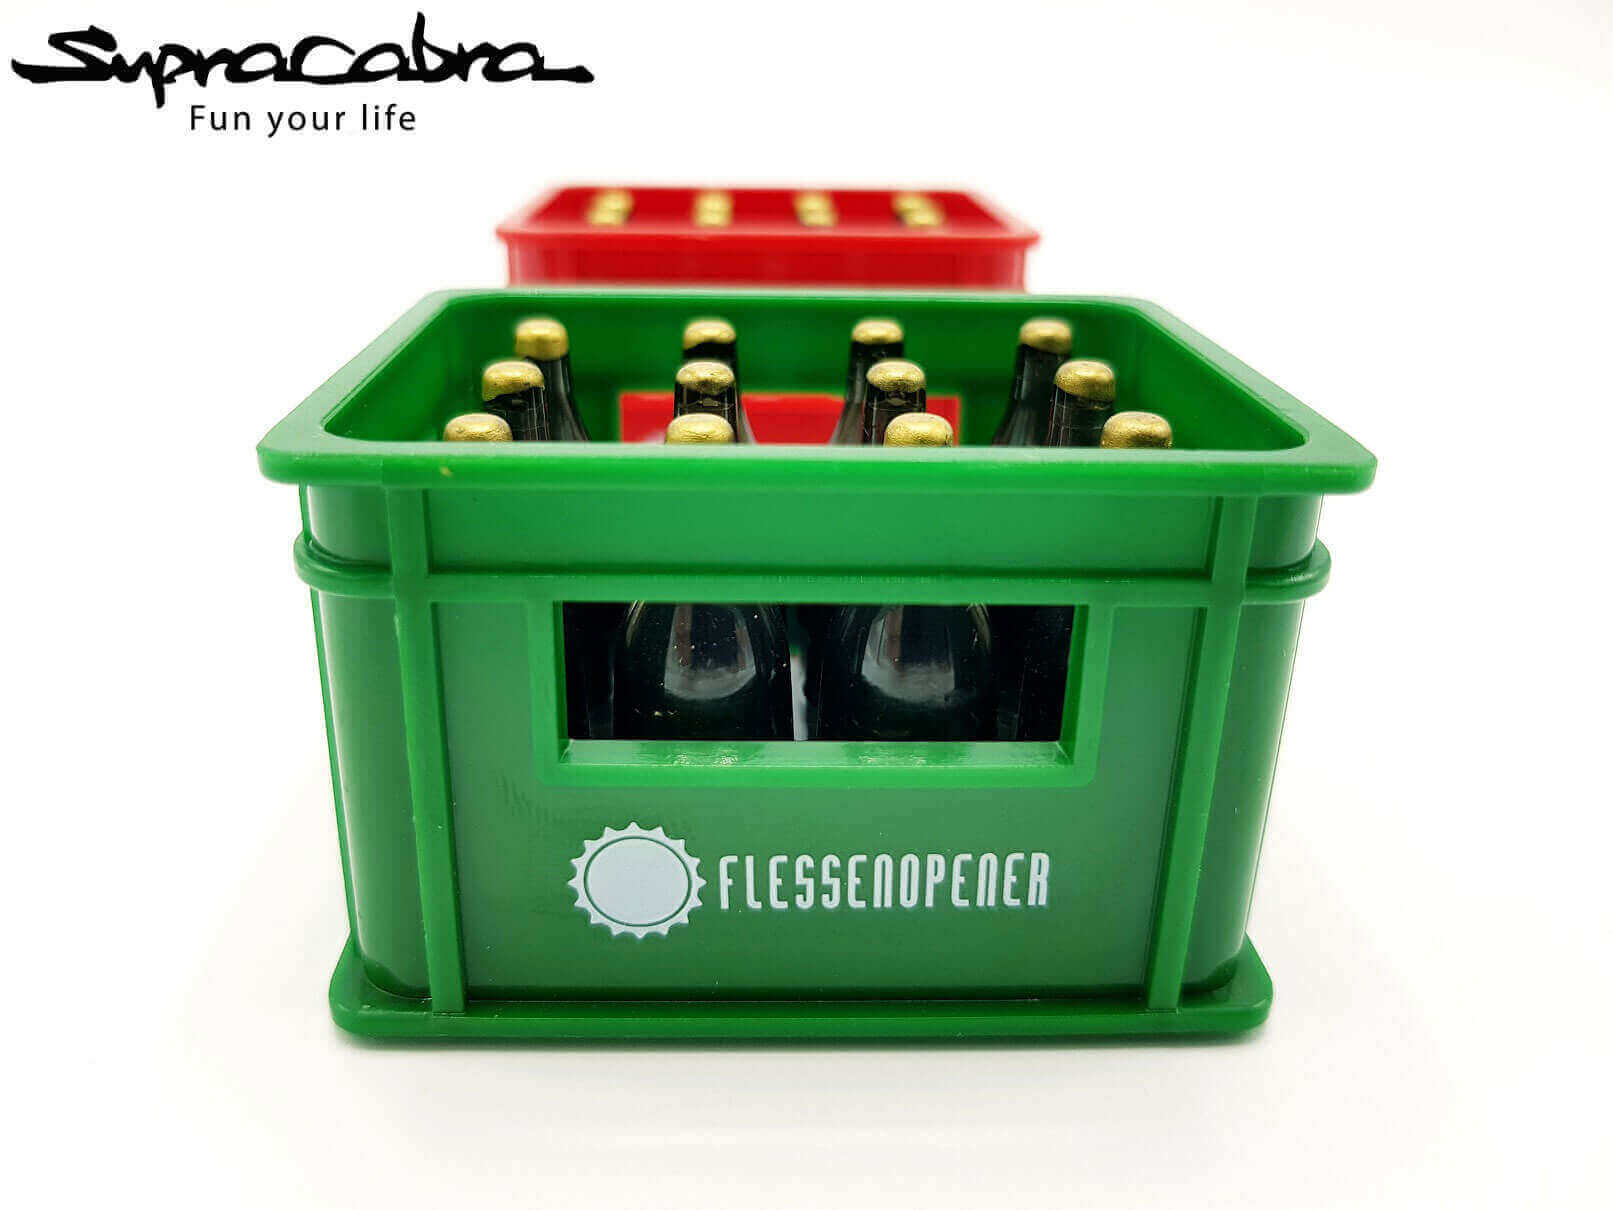 Beer Crate Bottle Opener (Red/Green)